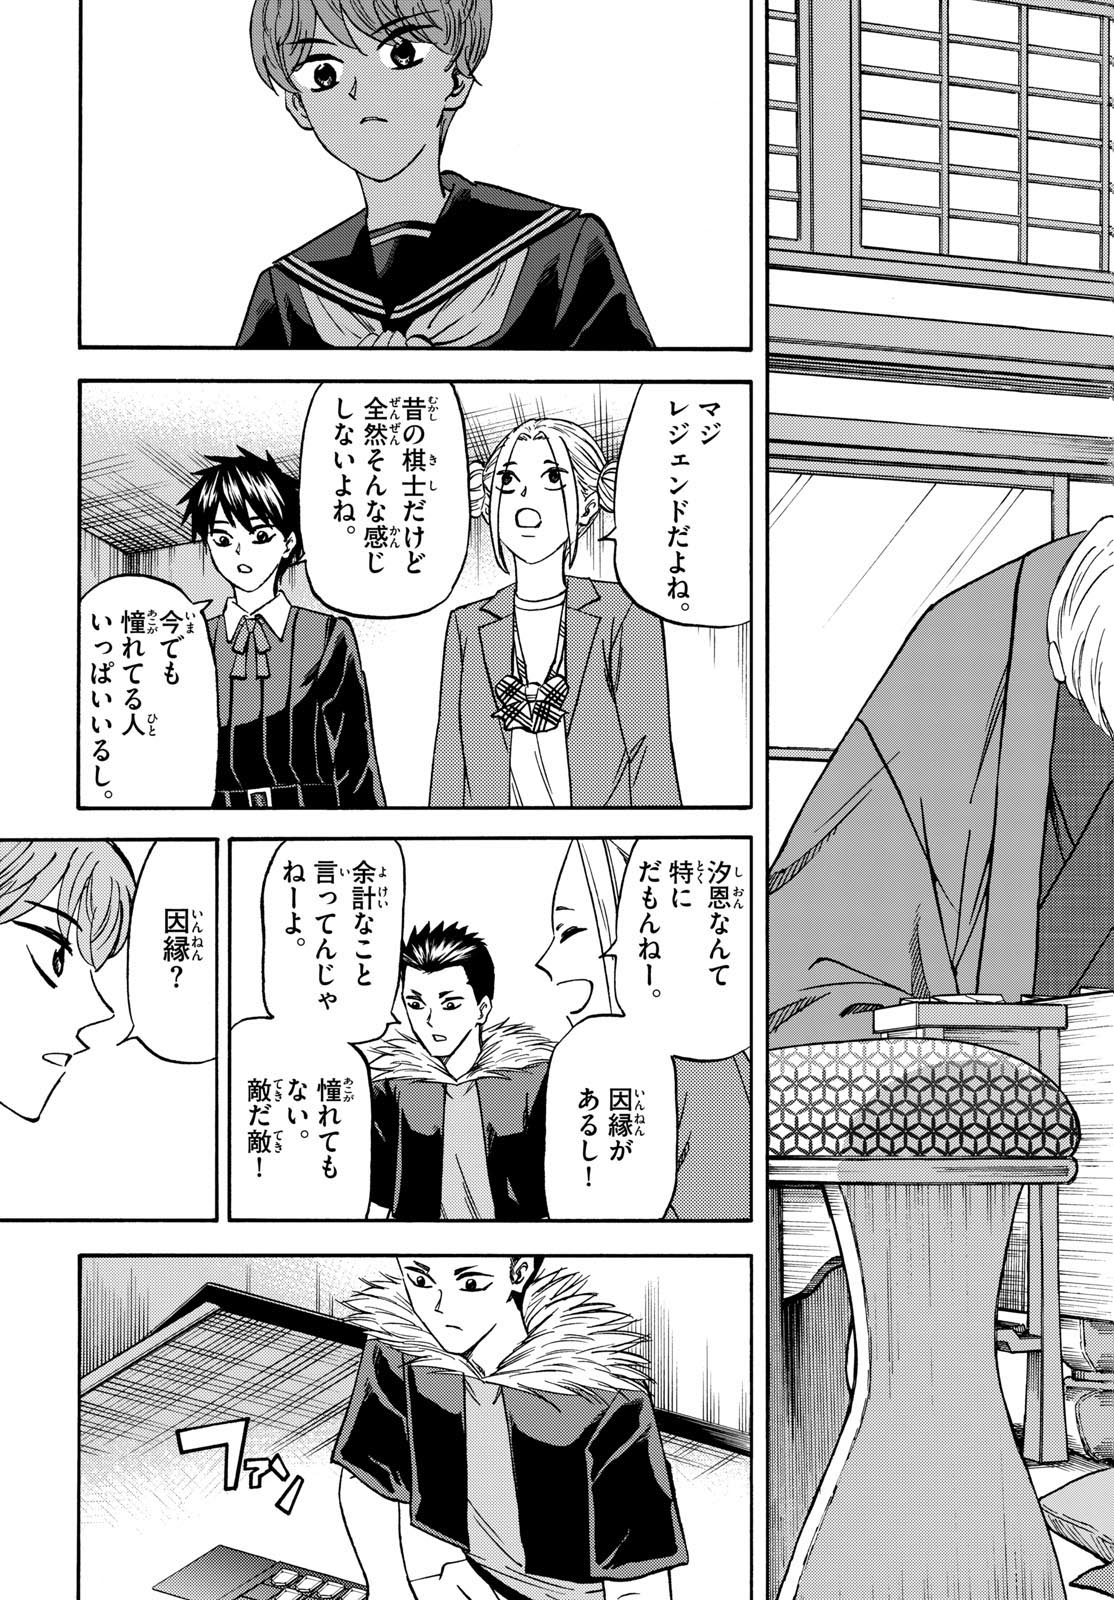 Tatsu to Ichigo - Chapter 183 - Page 7